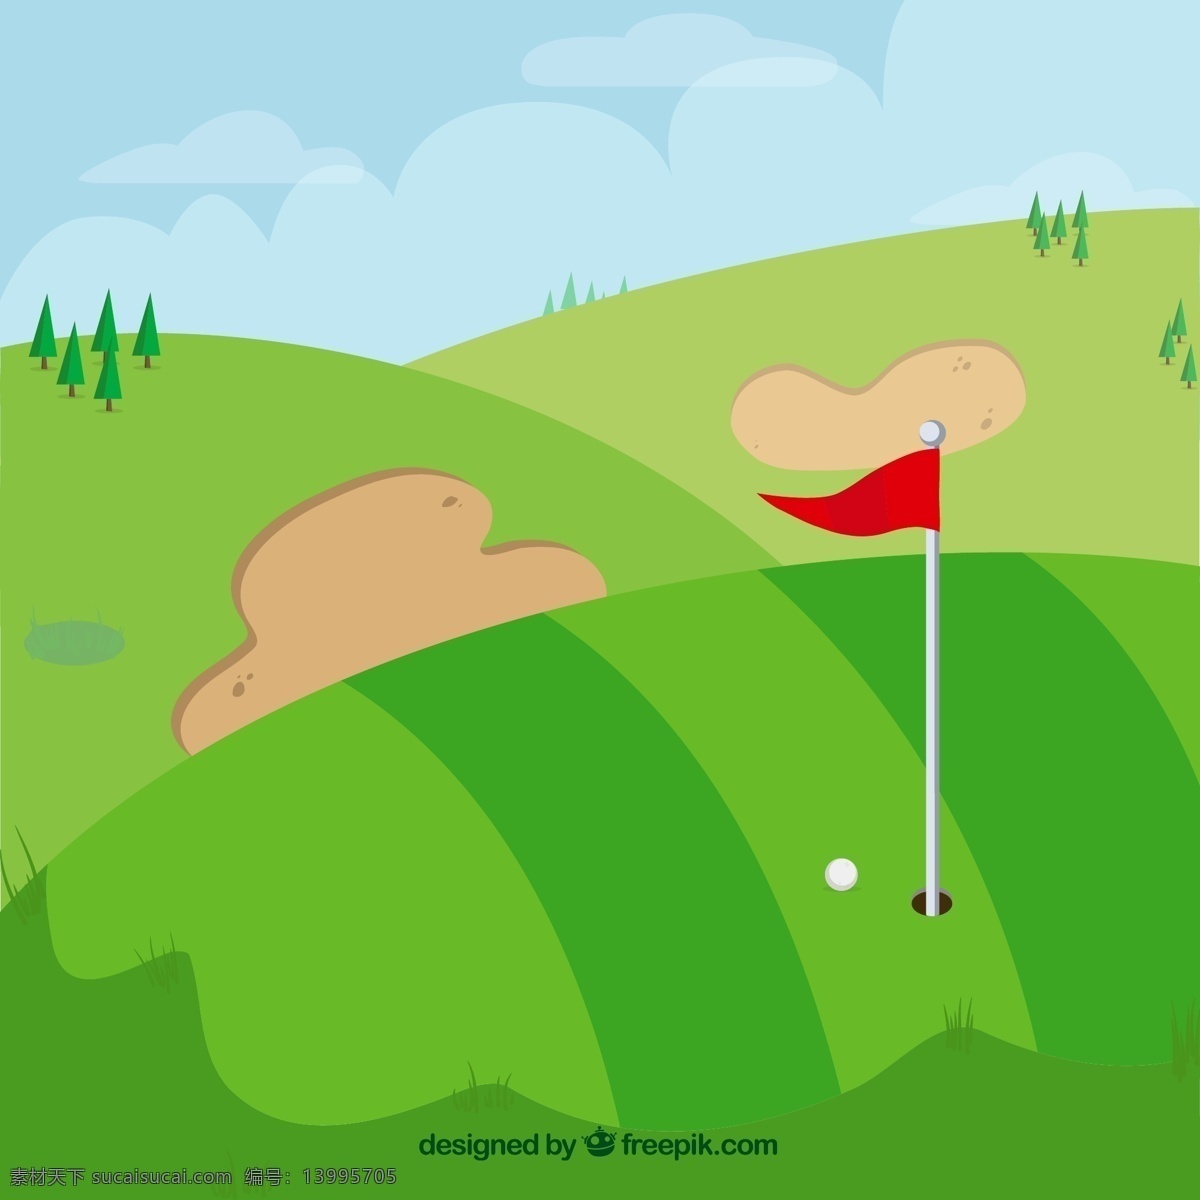 绿色 高尔夫球场 草地 山坡 树木 云朵 旗子 球洞 高尔夫球 动漫动画 风景漫画